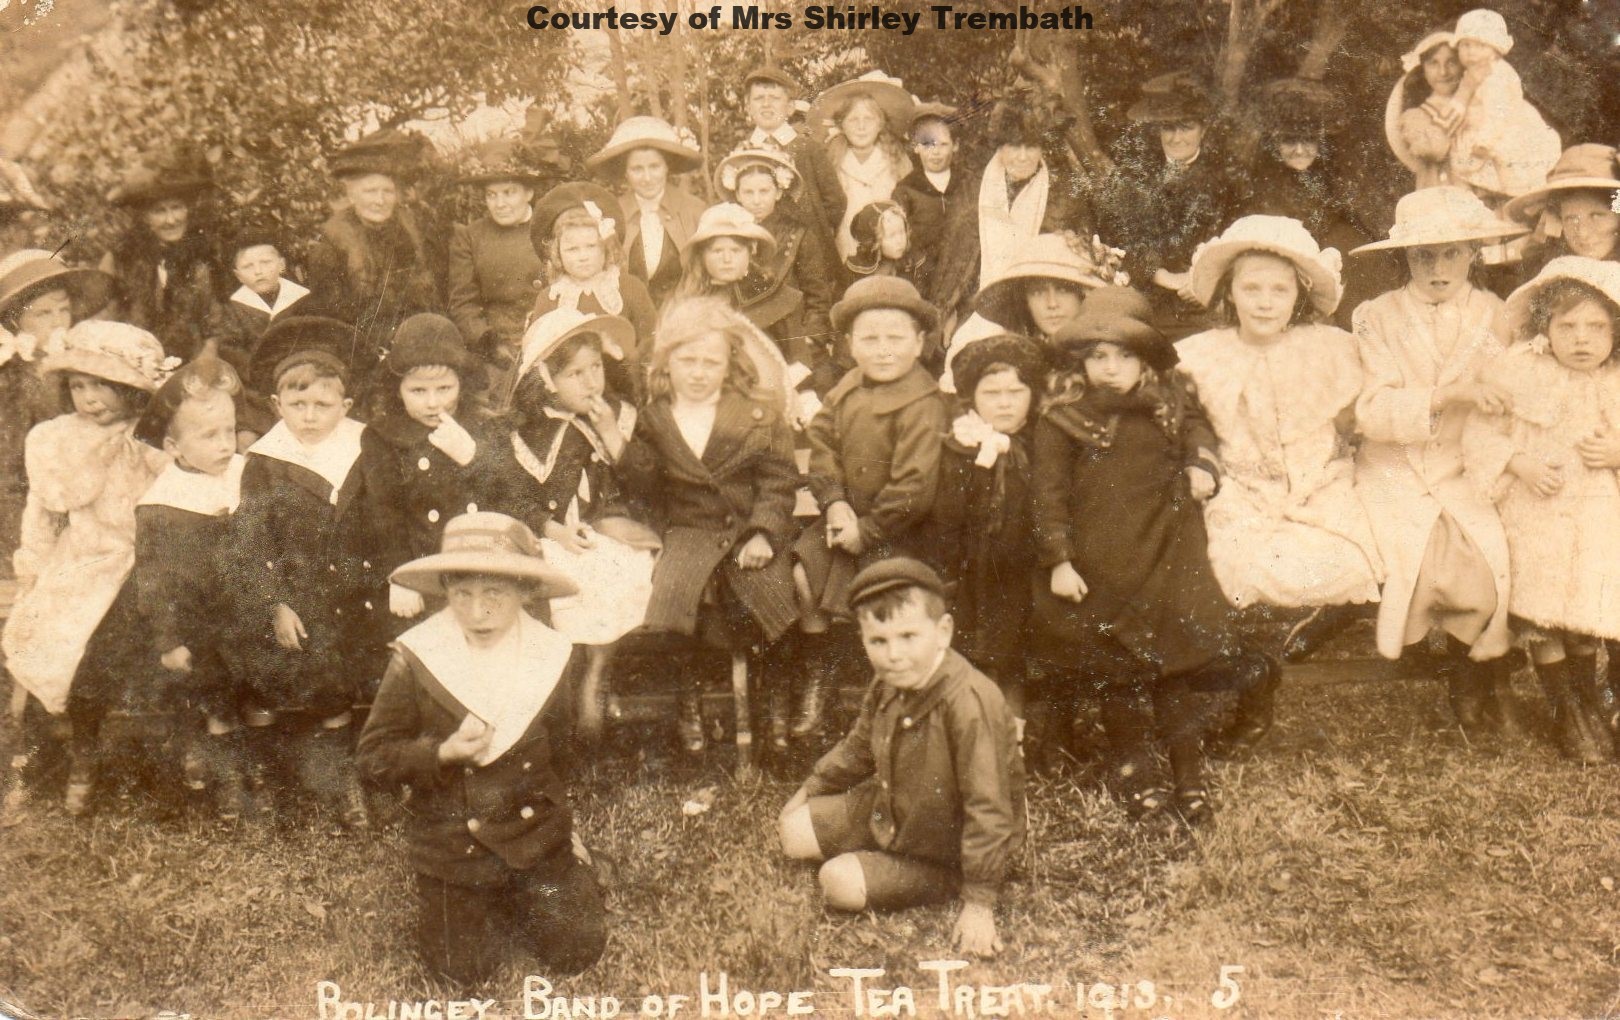 Bolingey Band of Hope 1912